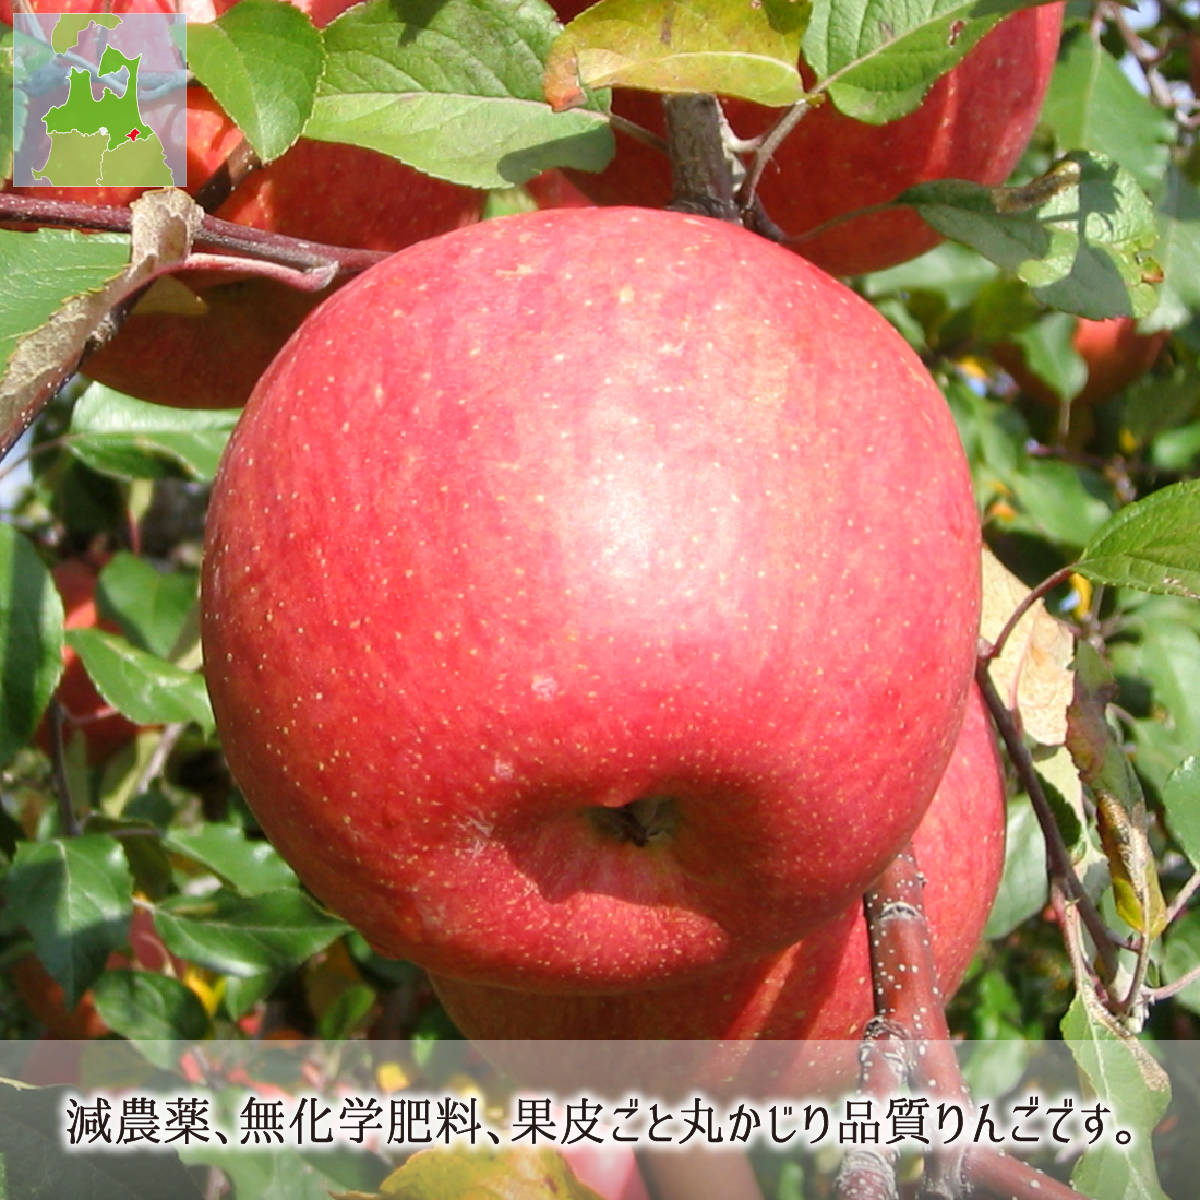 サンふじ 訳あり 15kg 減農薬 無化学肥料 青森県南部町産 りんご 家庭